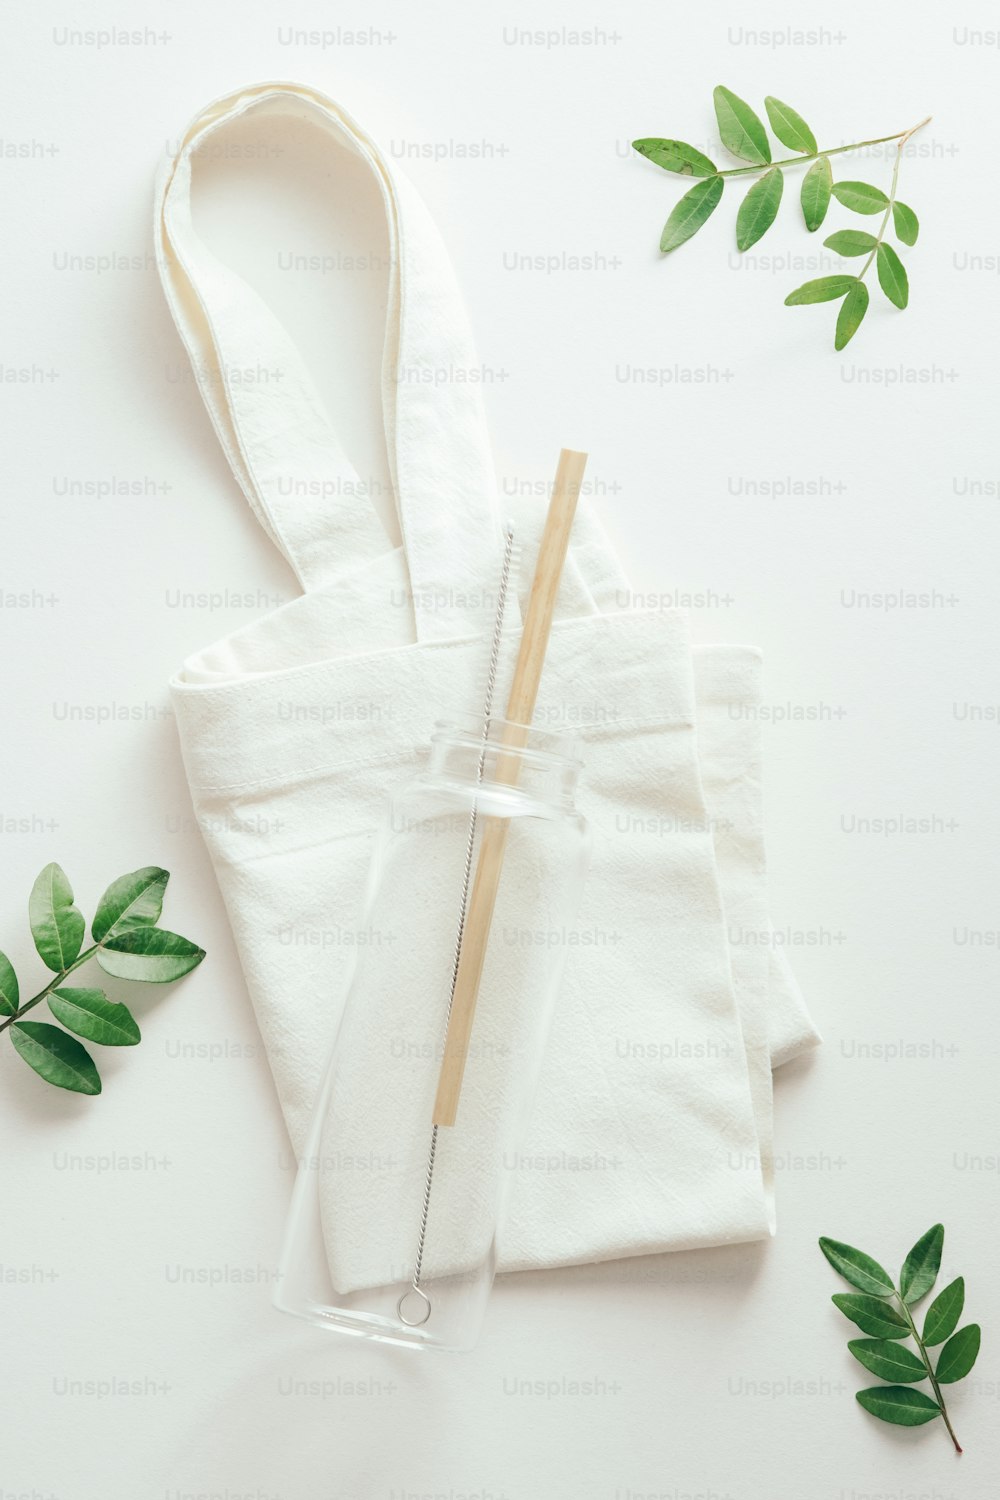 Wiederverwendbare umweltfreundliche Glaswasserflasche mit Bambusstroh auf Stoff Einkaufstasche mit grünen Blättern. Nachhaltiges Lifestyle-Konzept.